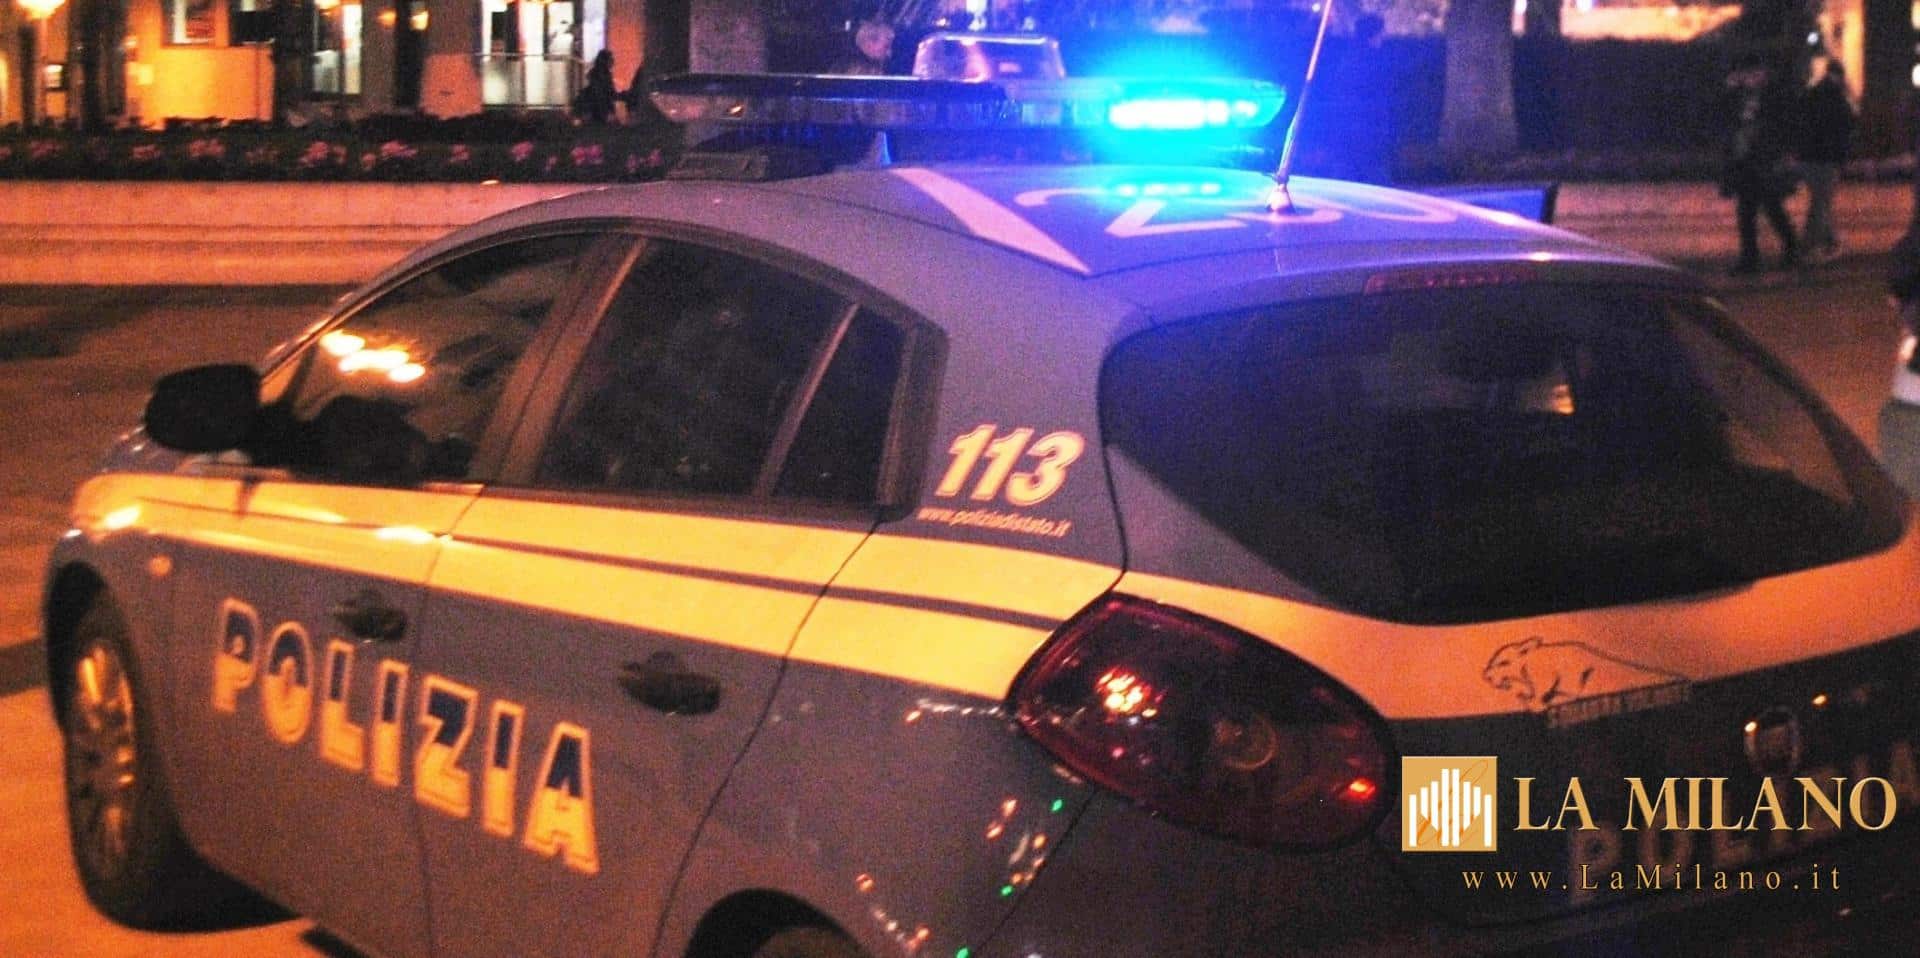 Taranto, spaccio di droga nel capoluogo. 22 indagati ritenuti responsabili per detenzione e cessione di sostanze stupefacenti